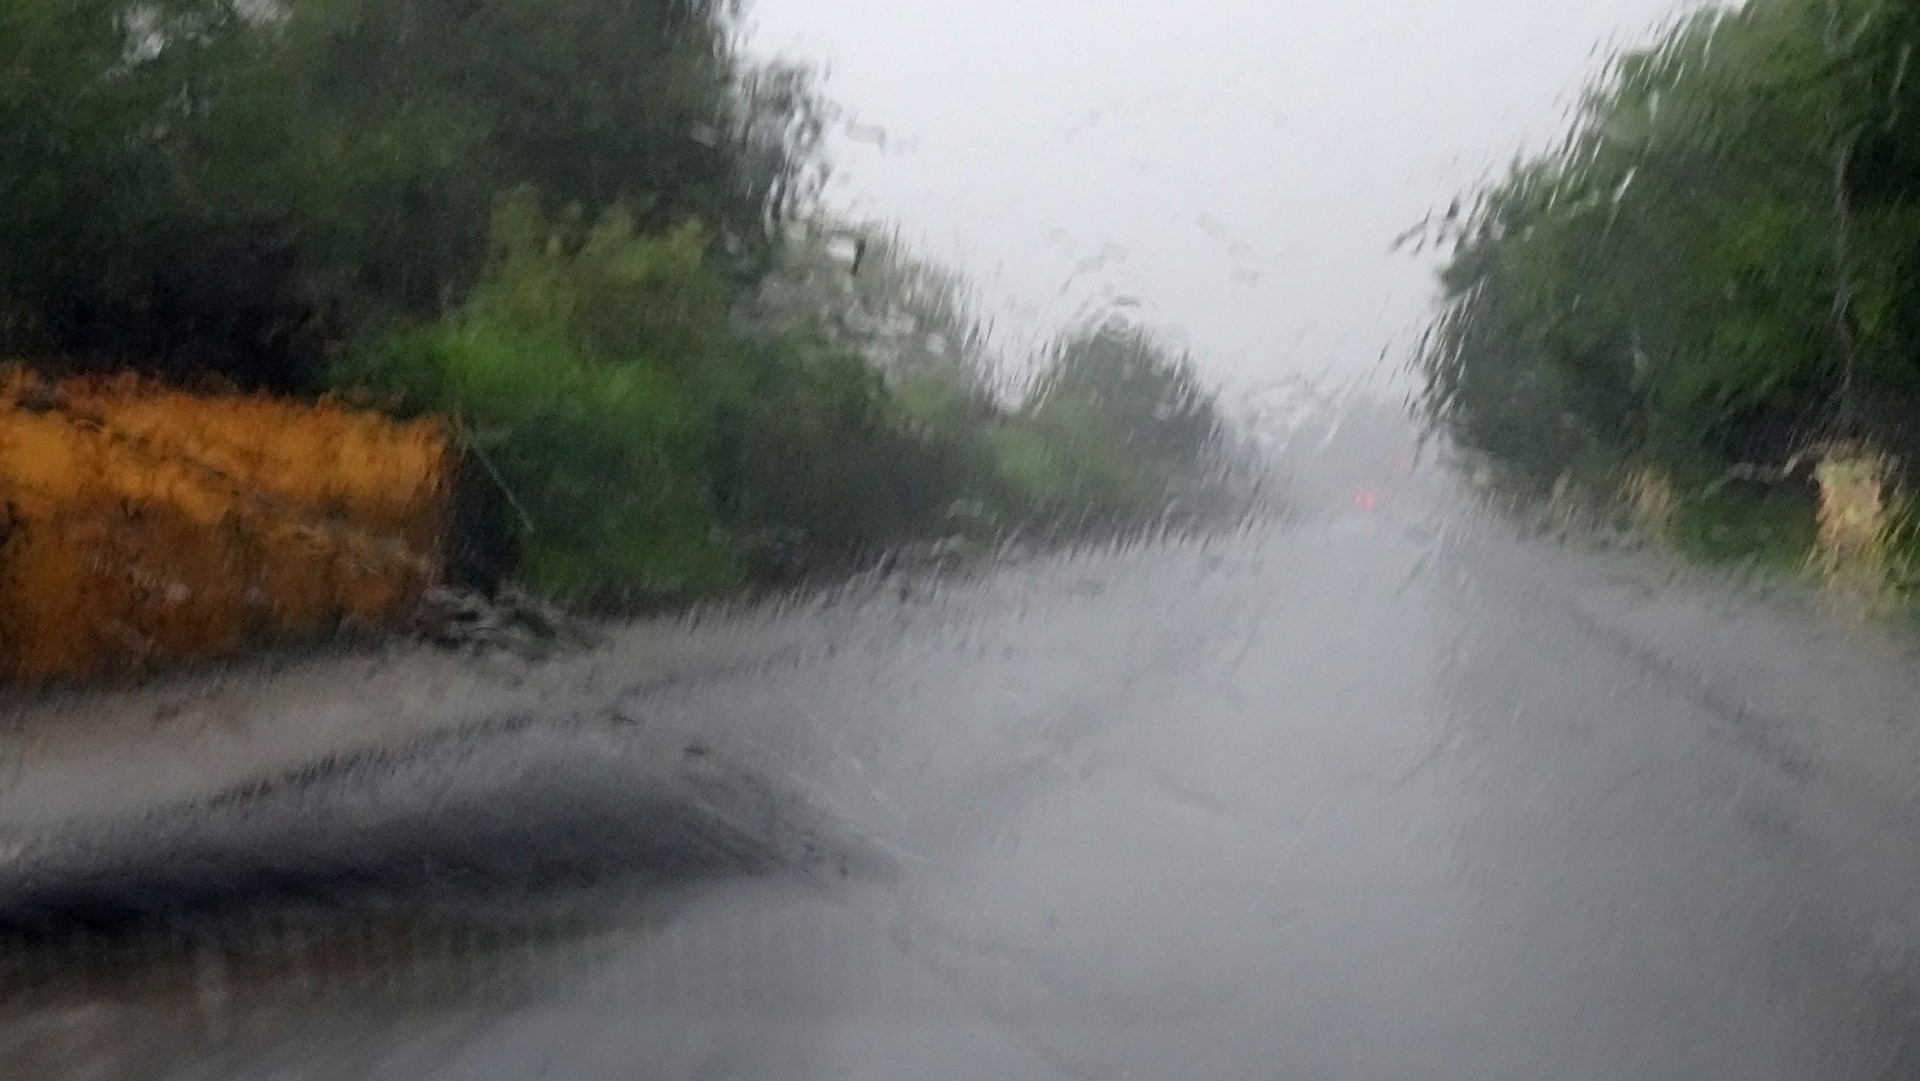 Regenbenetzte Frontscheibe - Bei Starkregen vorsichtig fahren